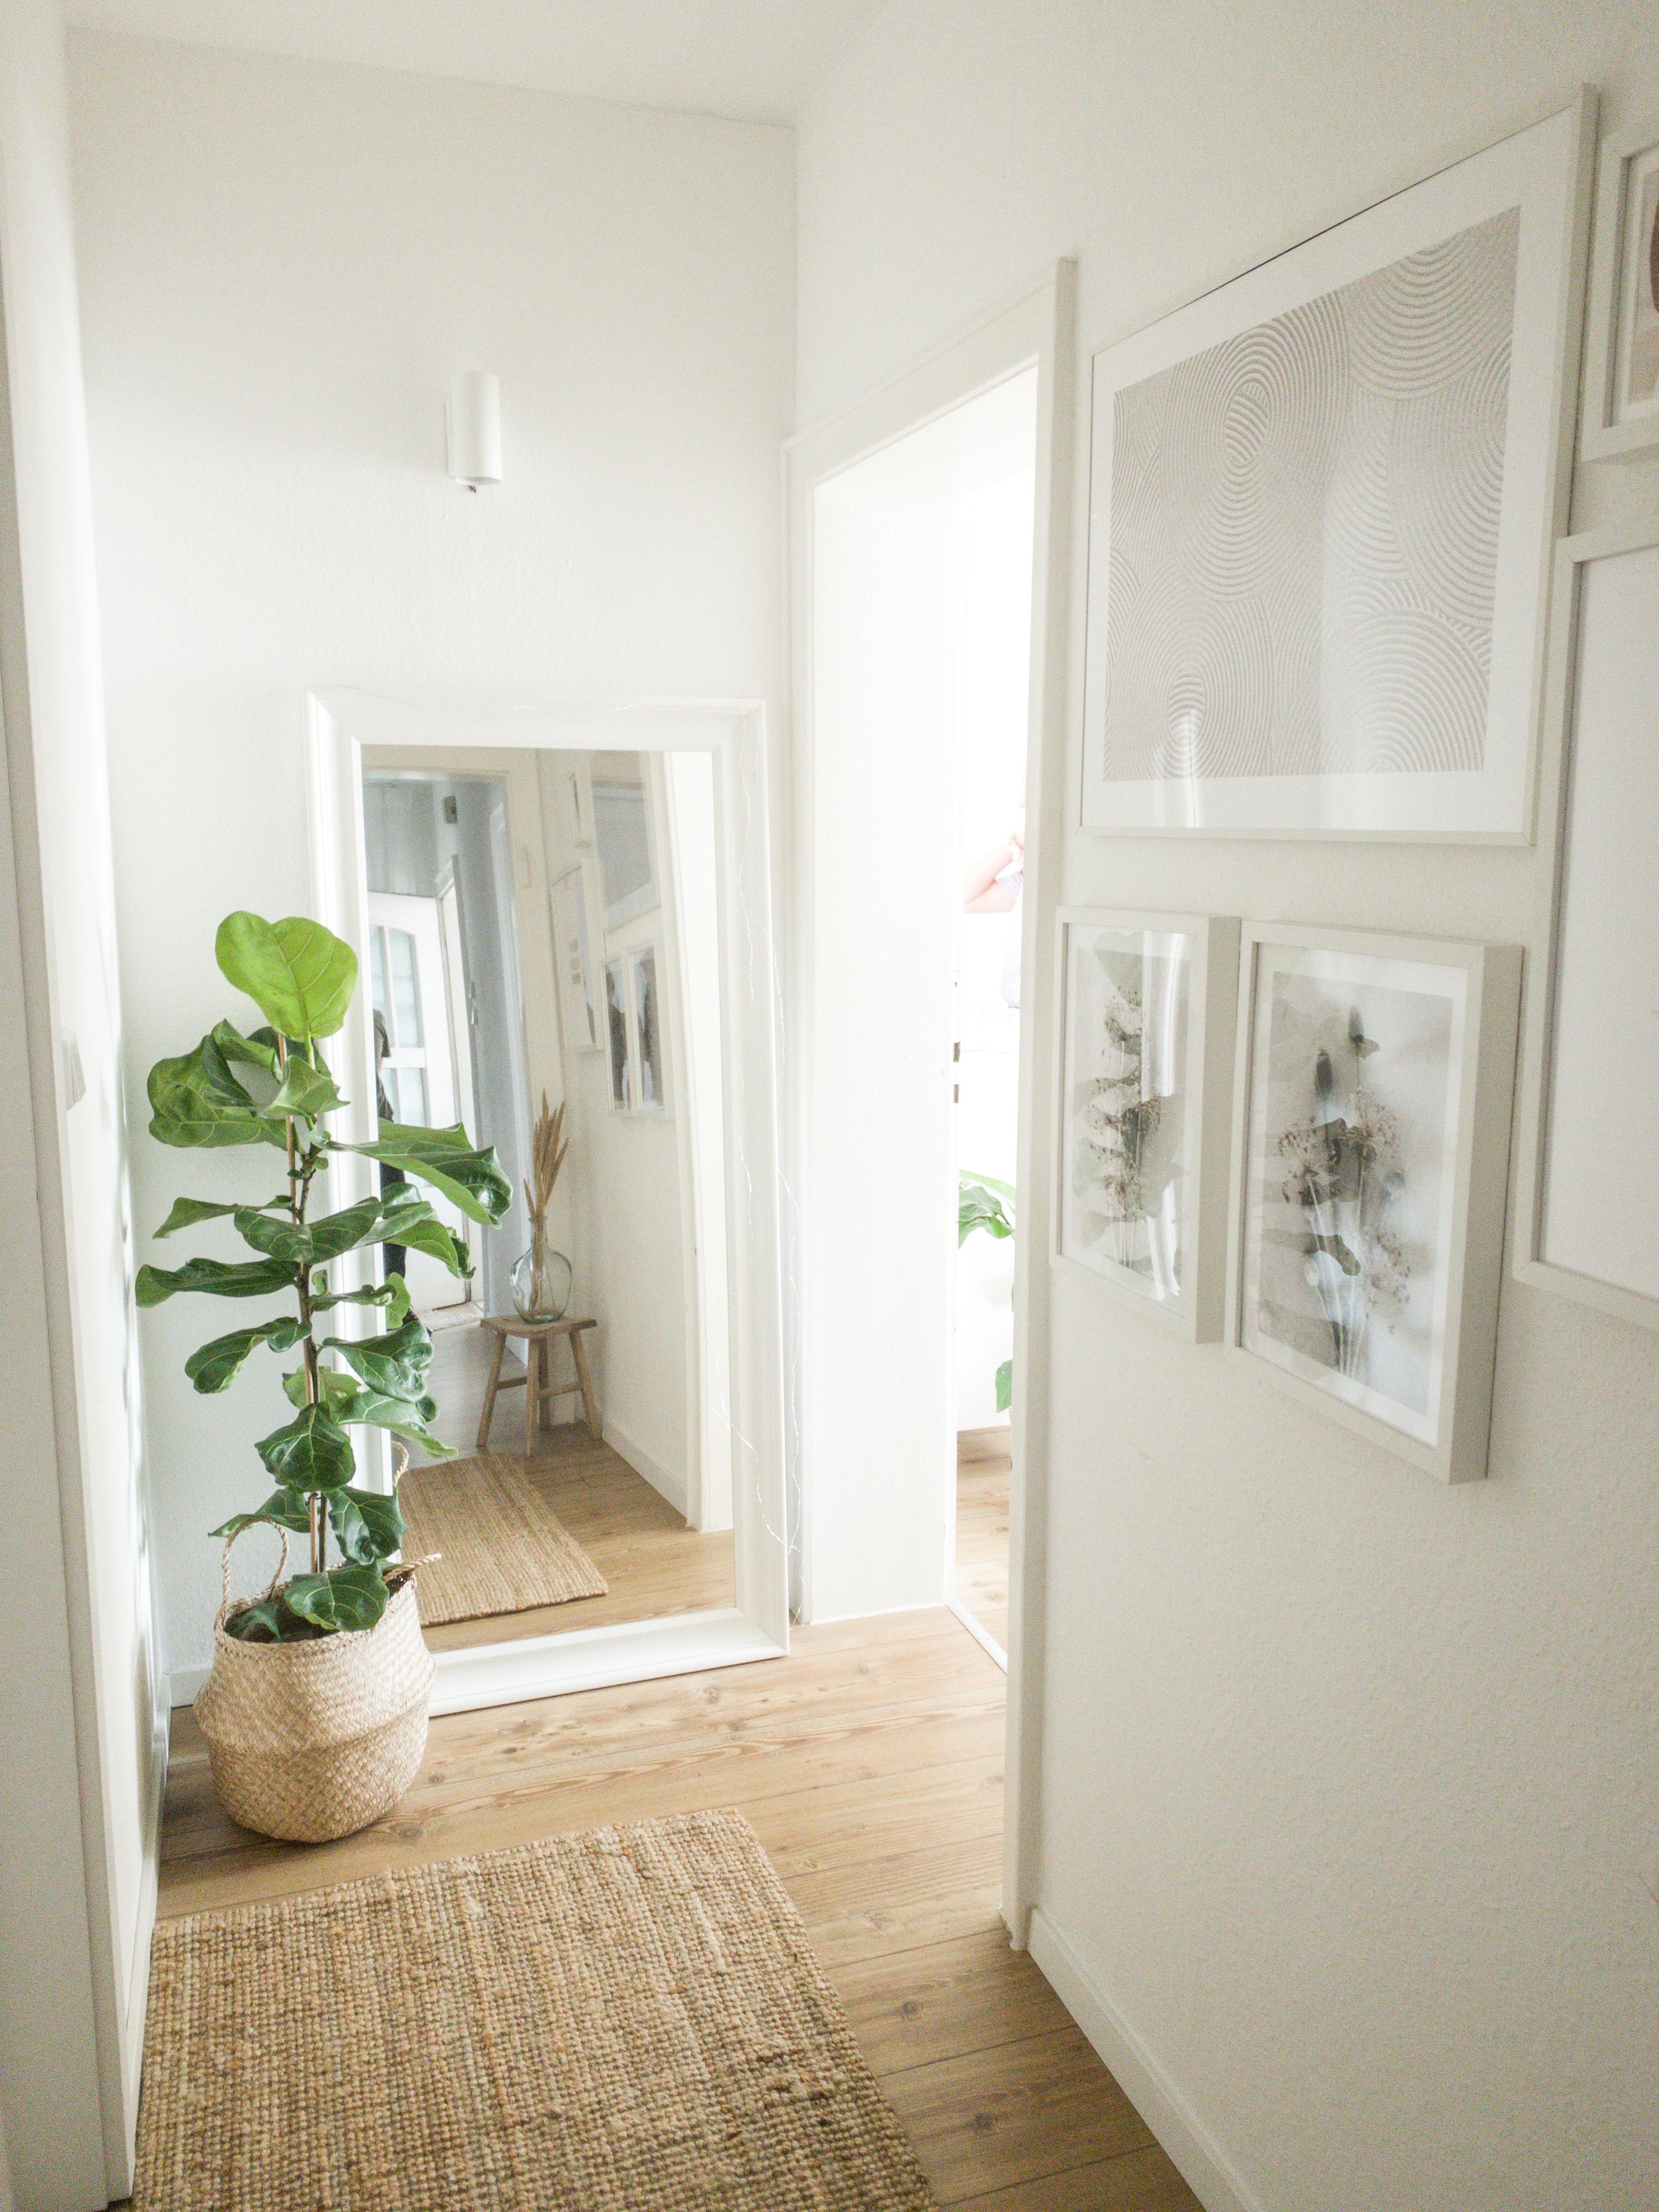 Unser Eingangsbereich #hallway #flur #eingangsbereich #beige #teppich #spiegel #geigenfeige #bilderwand